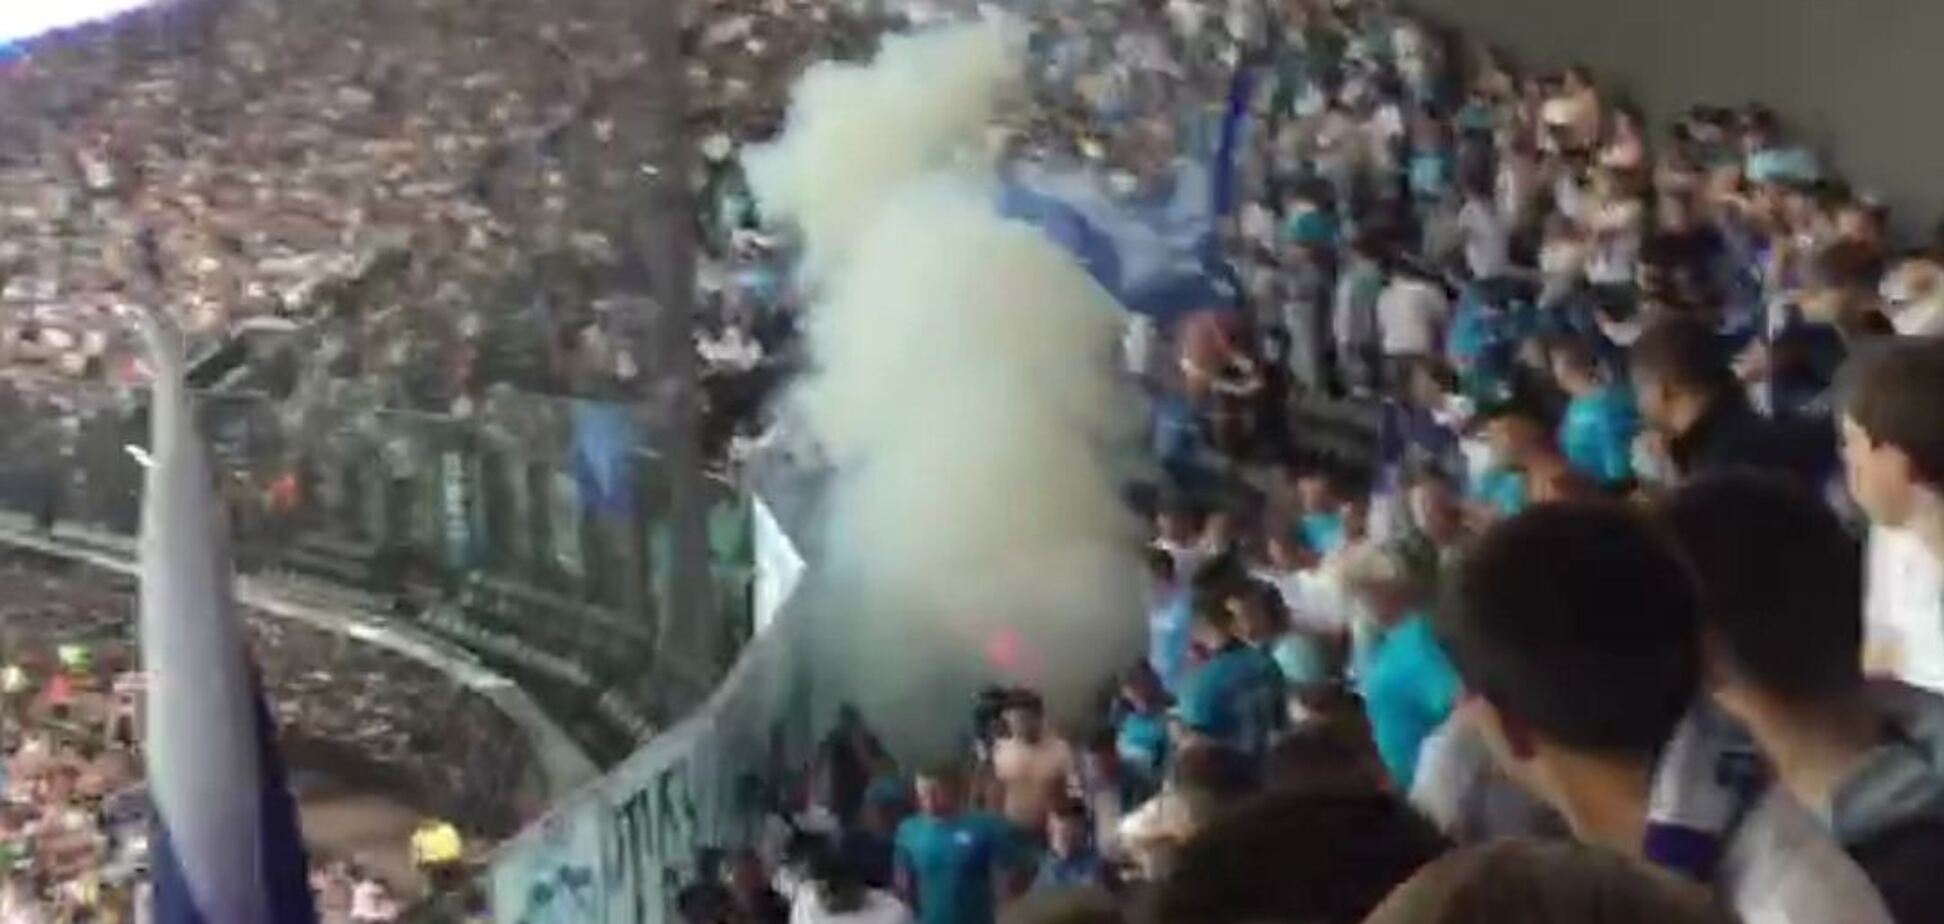 Російські фанати в знак протесту підпалили стадіон під час матчу: фото і відео інциденту